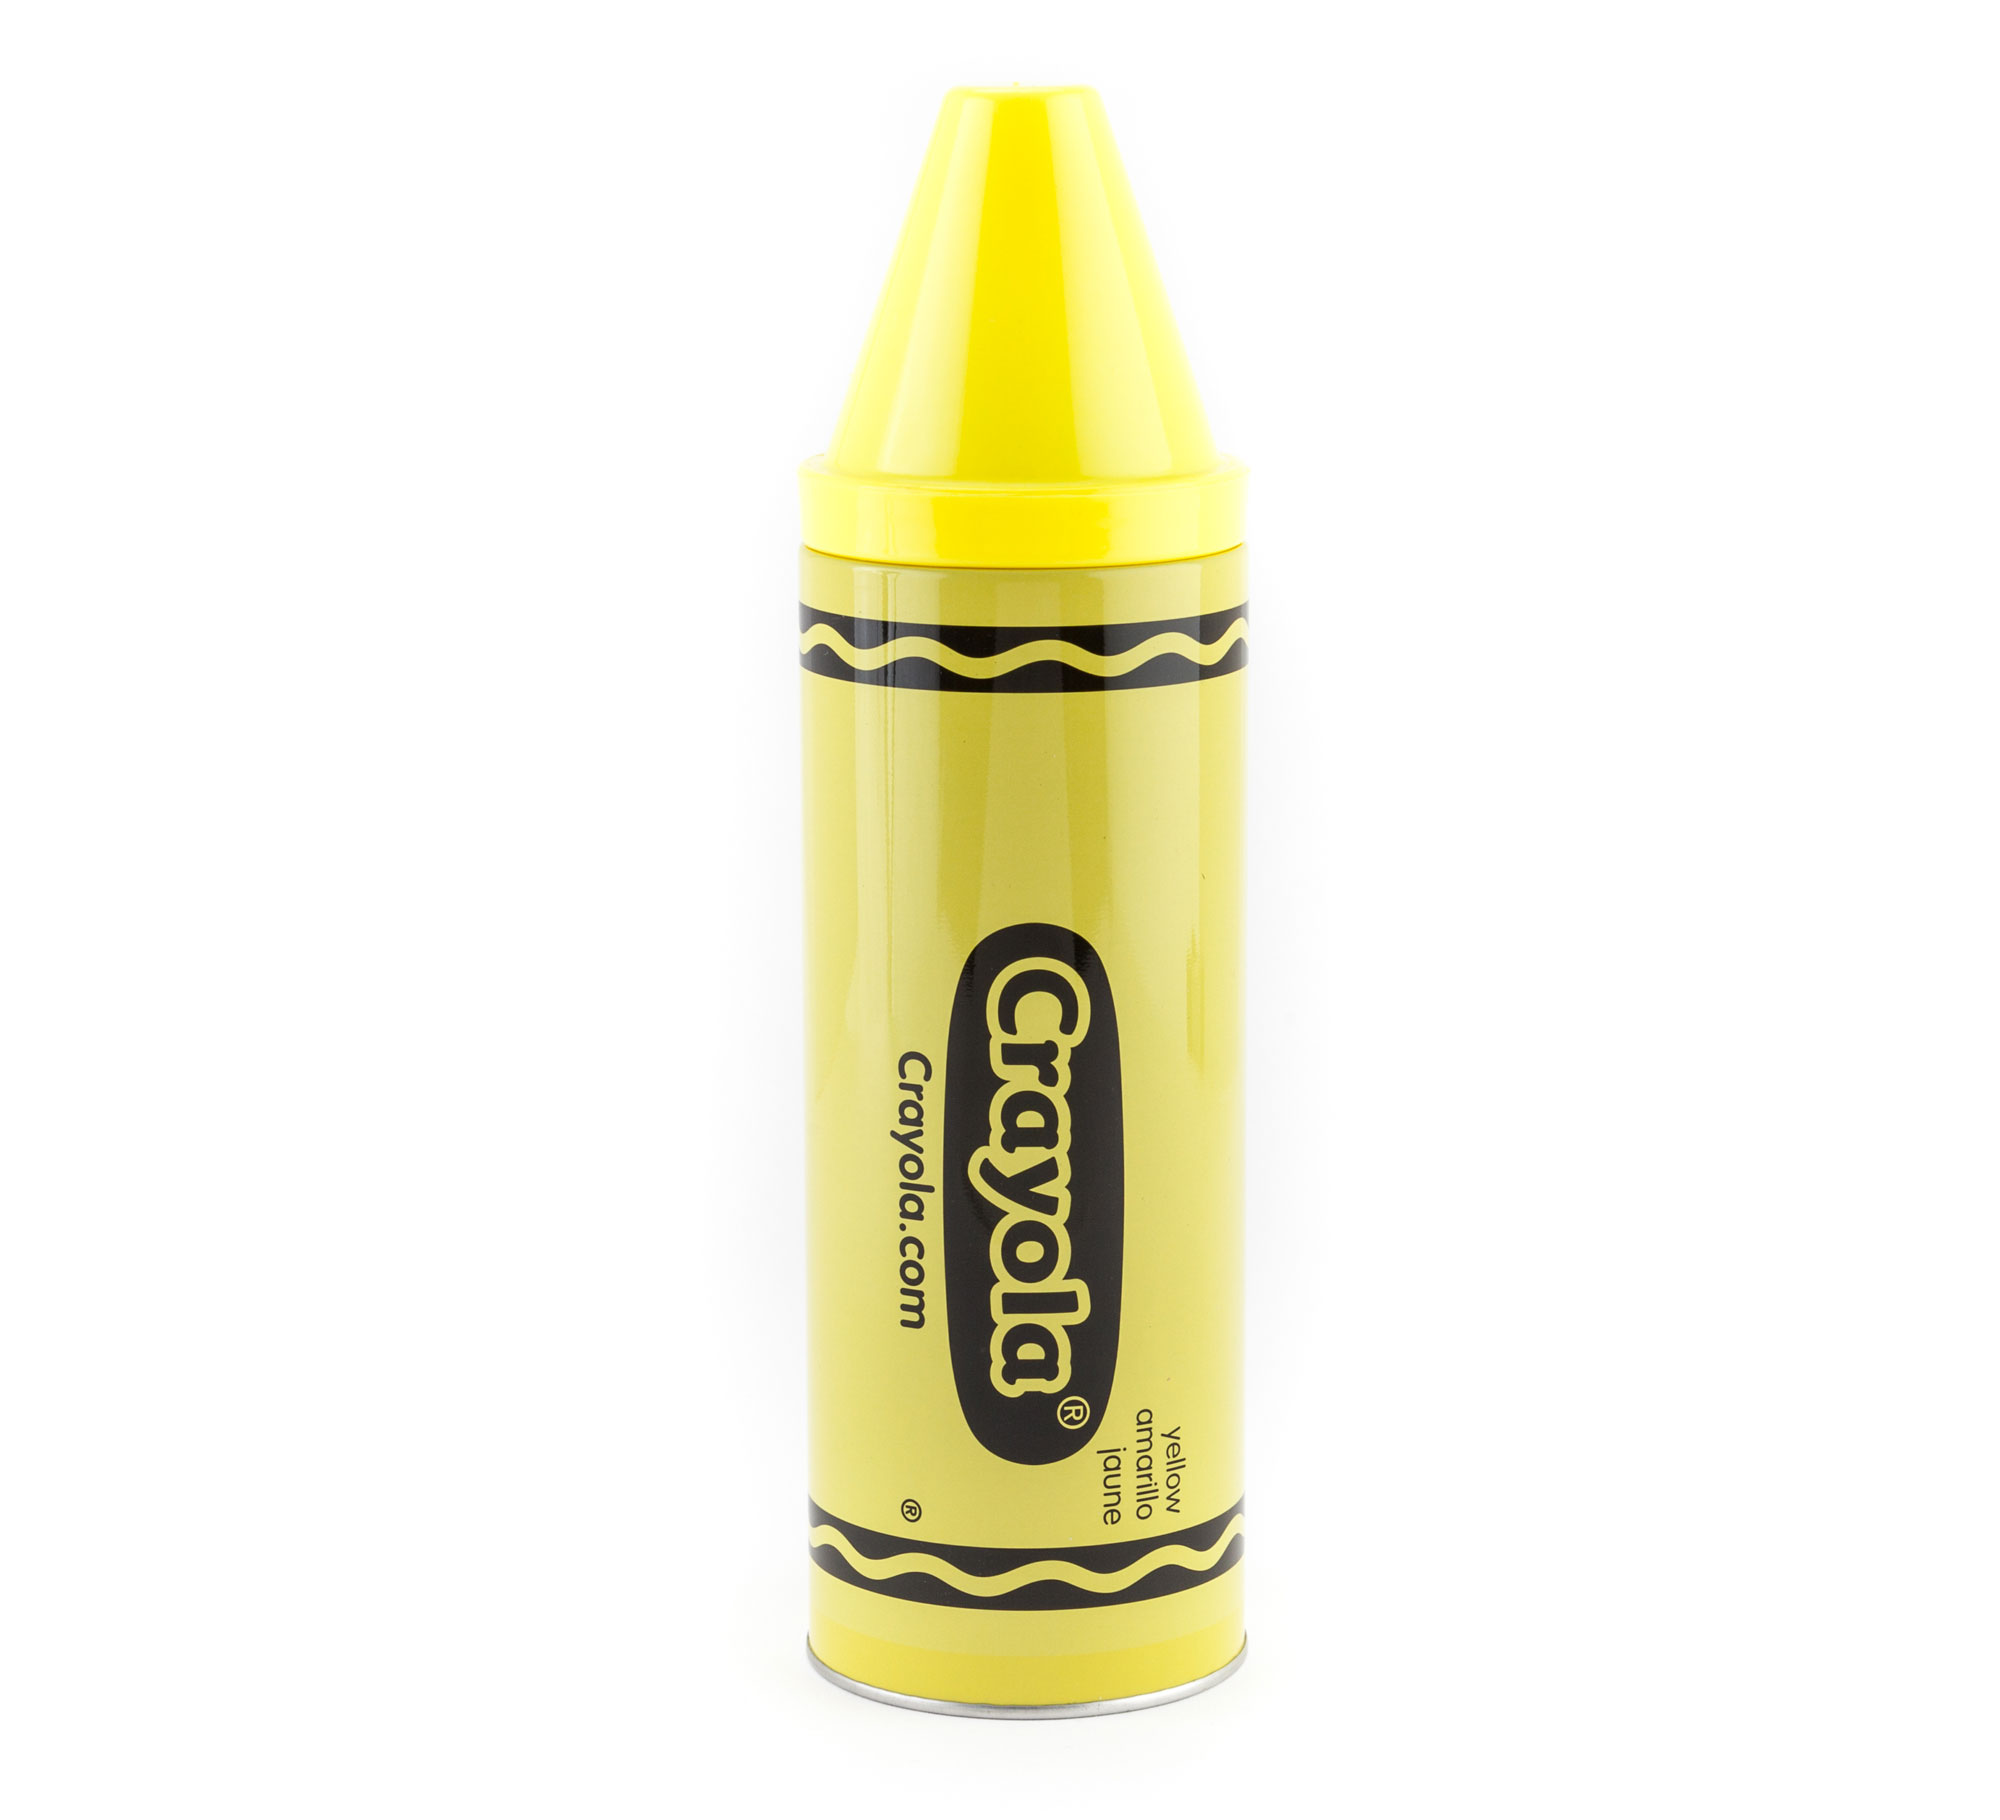 crayola crayon tin bank yellow